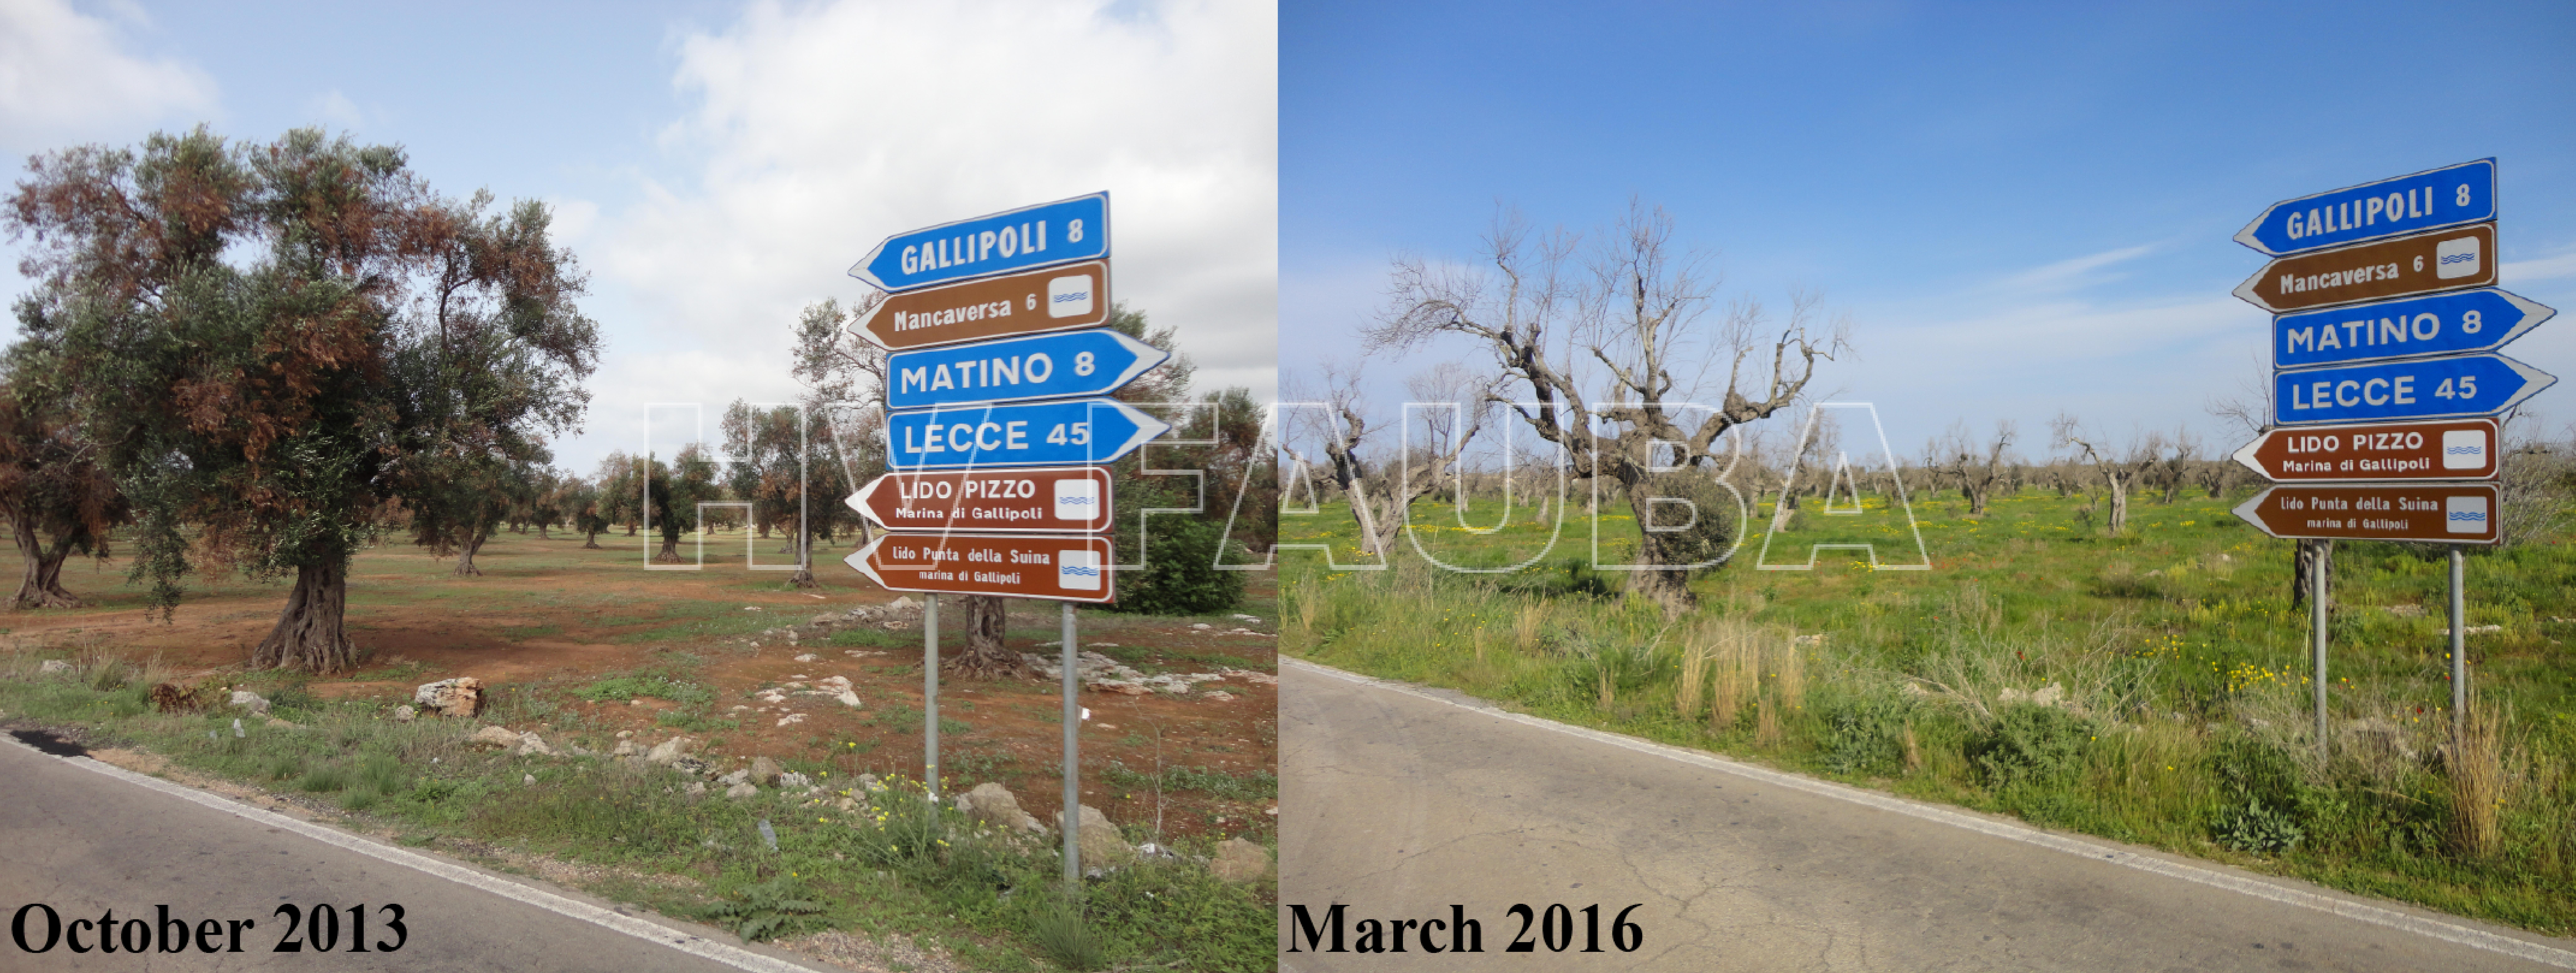 Fotografías del antes y después de un olivar en la región de la Puglia en Italia,  devastada por la infección por Xylella fastidiosa. Autor de las fotos: Donato Boscia, publicadas en Almedia, 2018.